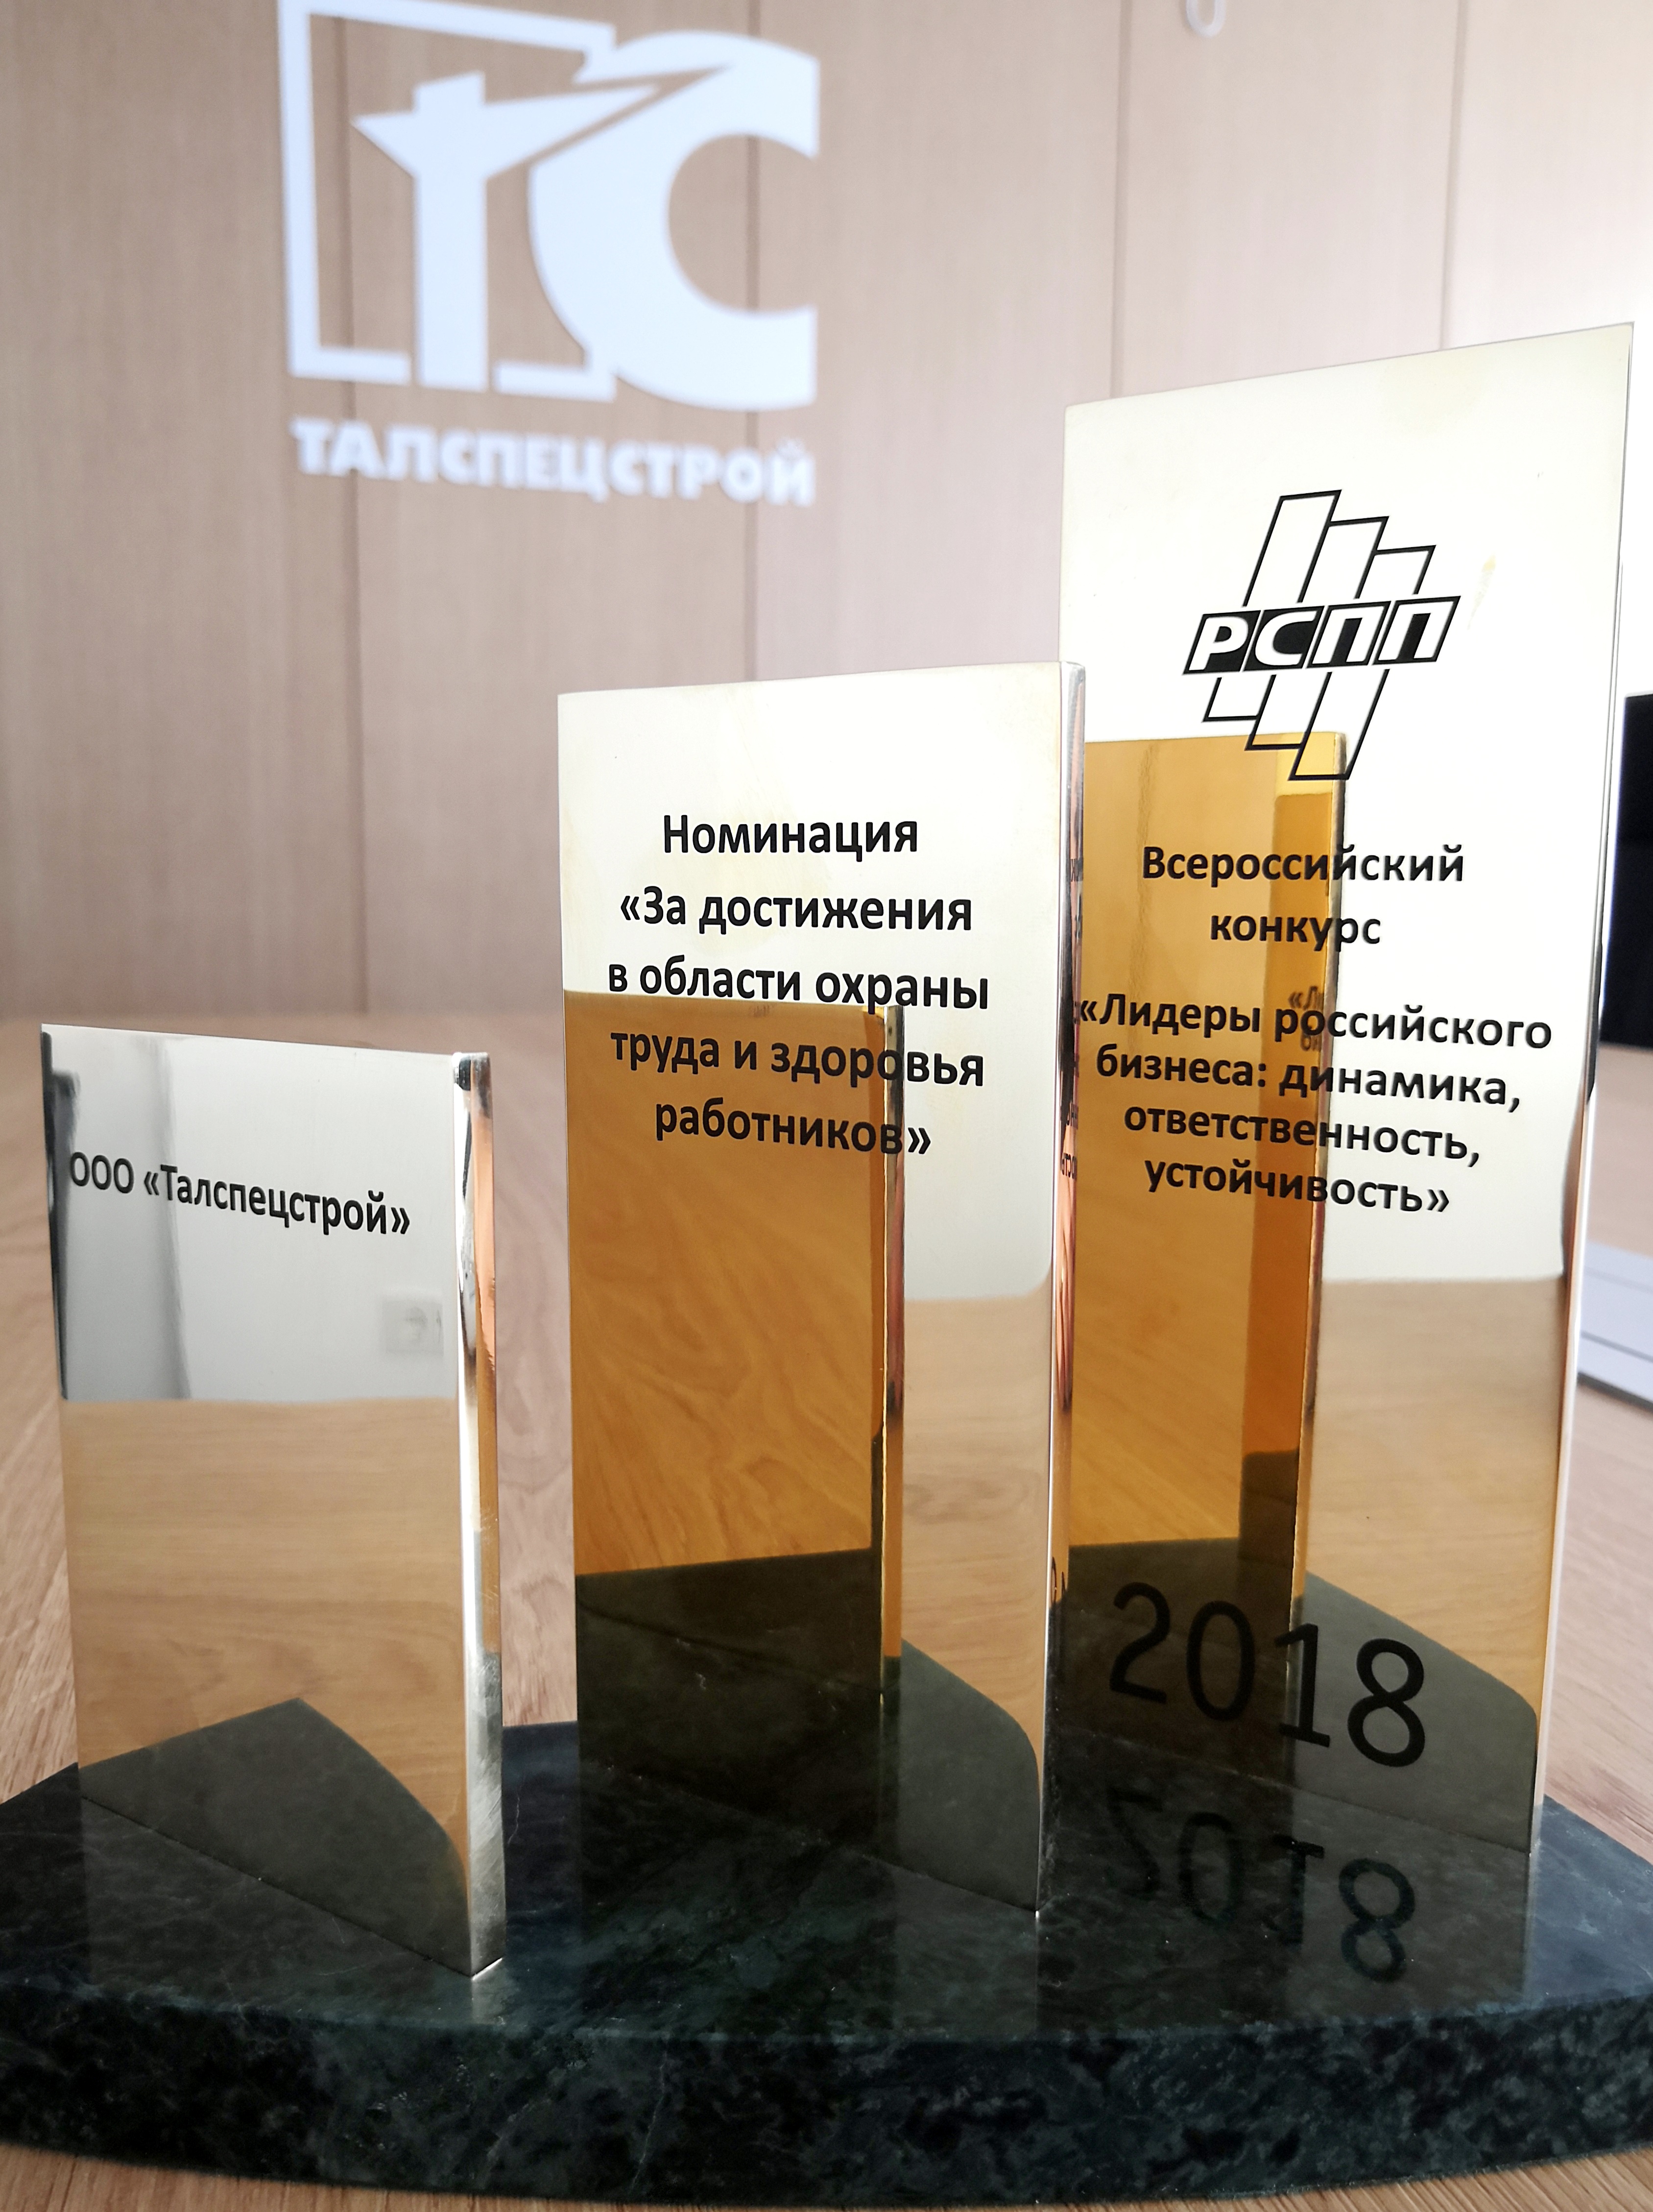 ООО «Талспецстрой» - победитель Всероссийского конкурса РСПП «Лидеры российского бизнеса: динамика, ответственность, устойчивость – 2018»